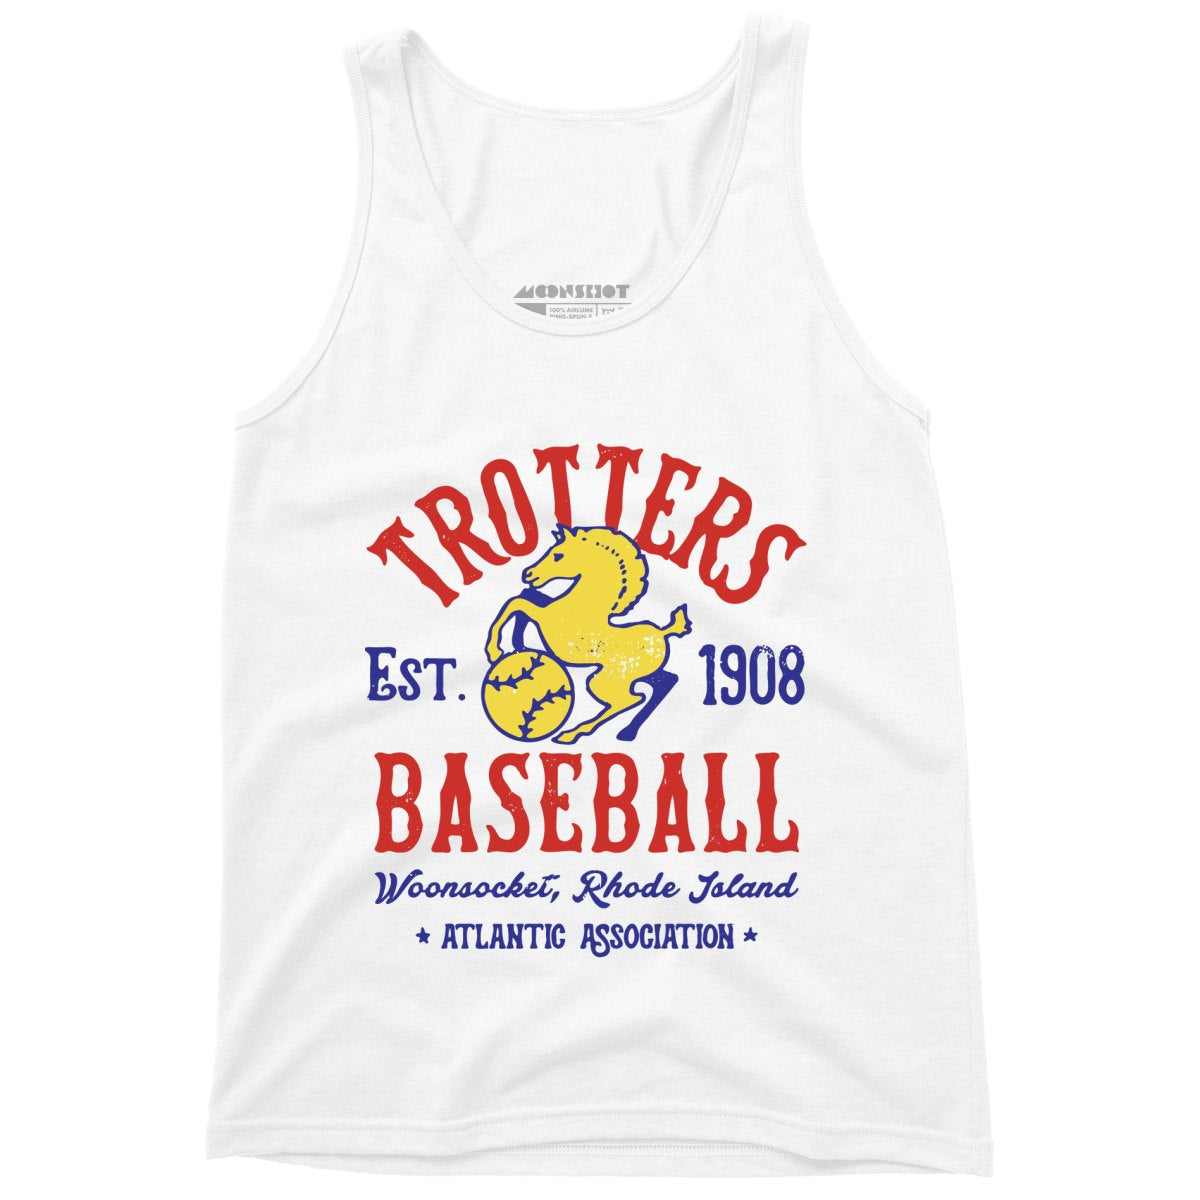 Woonsocket Trotters - Rhode Island - Vintage Defunct Baseball Teams - Unisex Tank Top